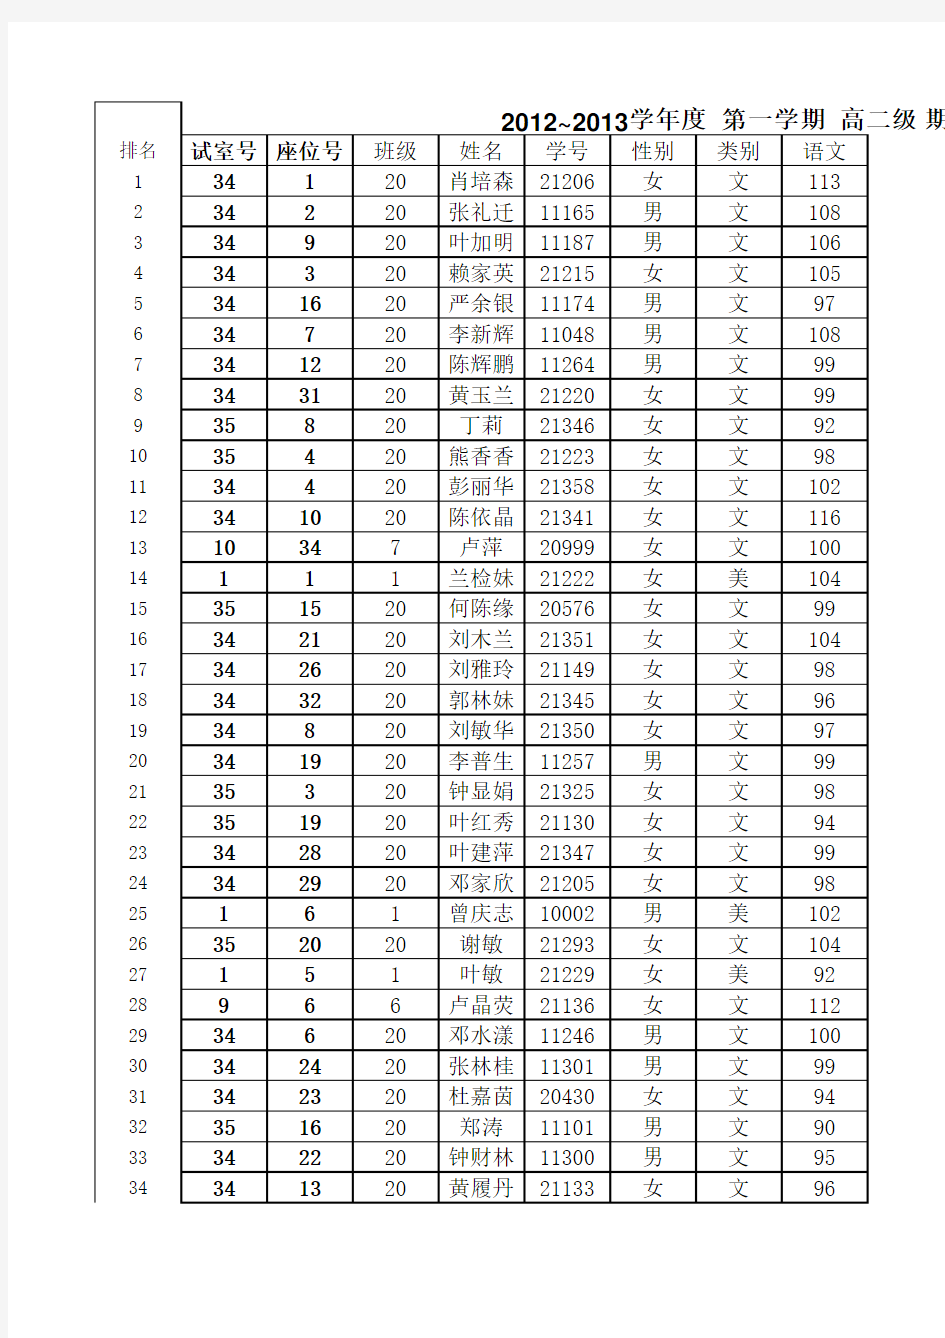 高二文科2012~2013年期末考成绩全级排名